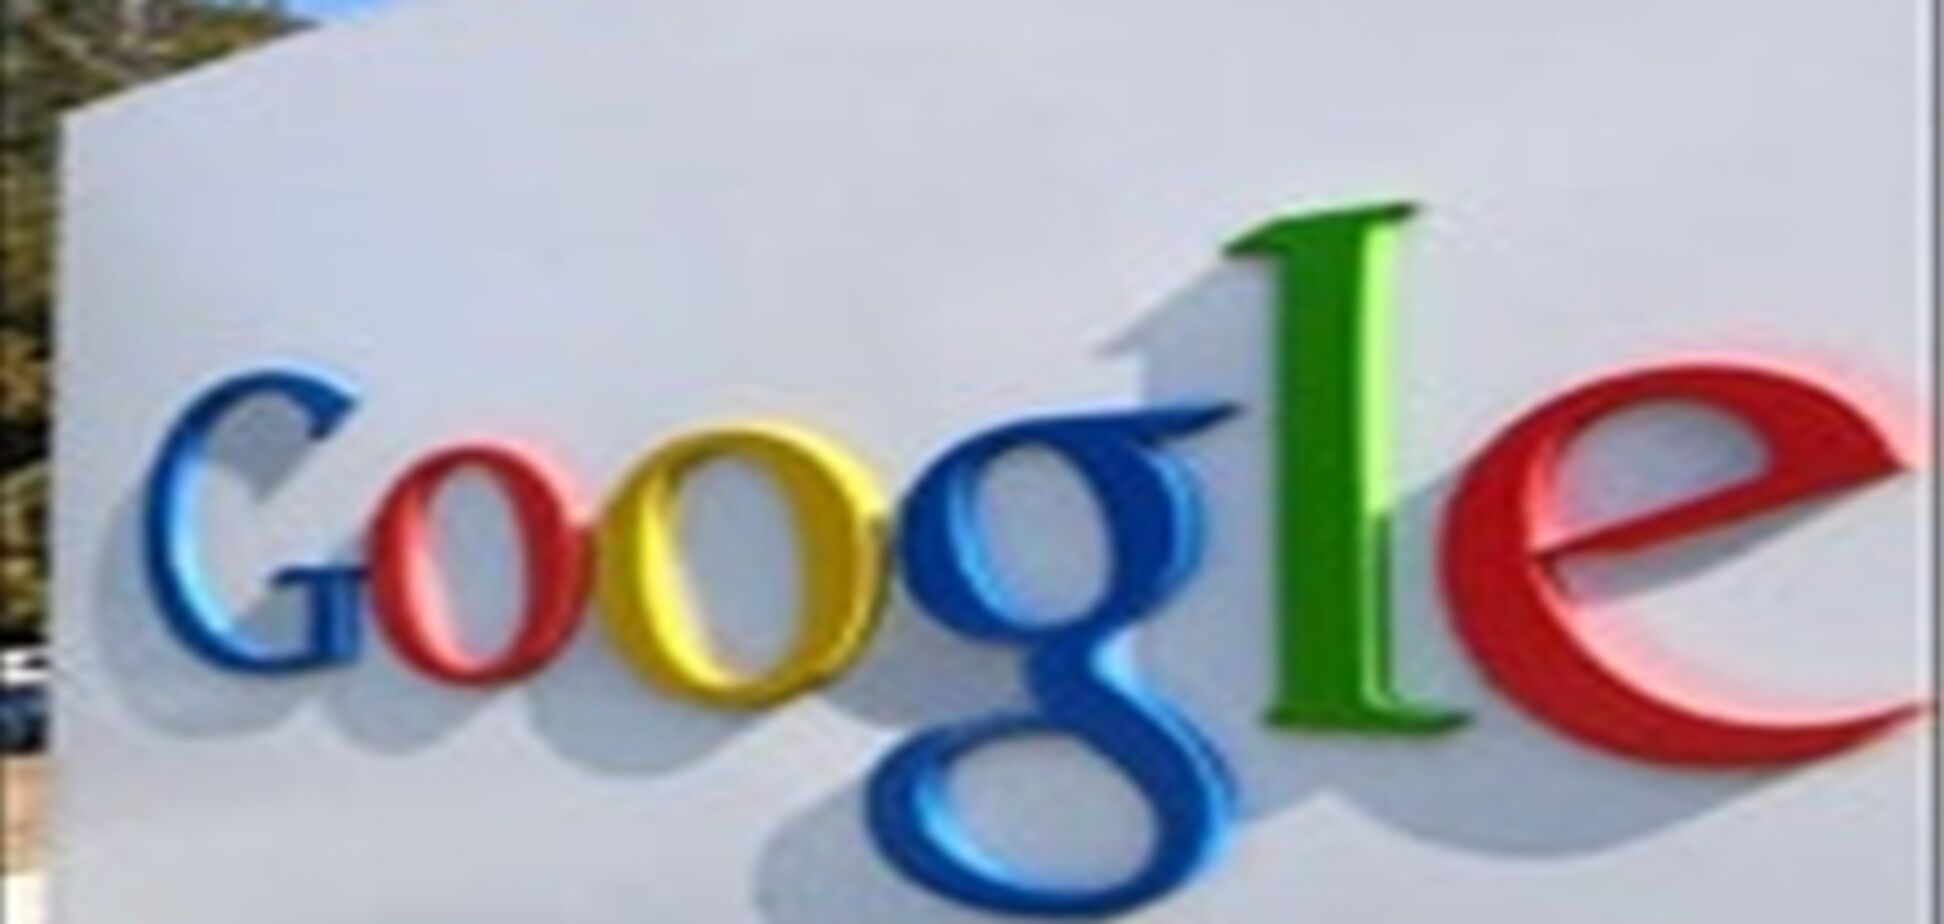 Четверо менеджеров Google Italy пойдут под суд за видео 